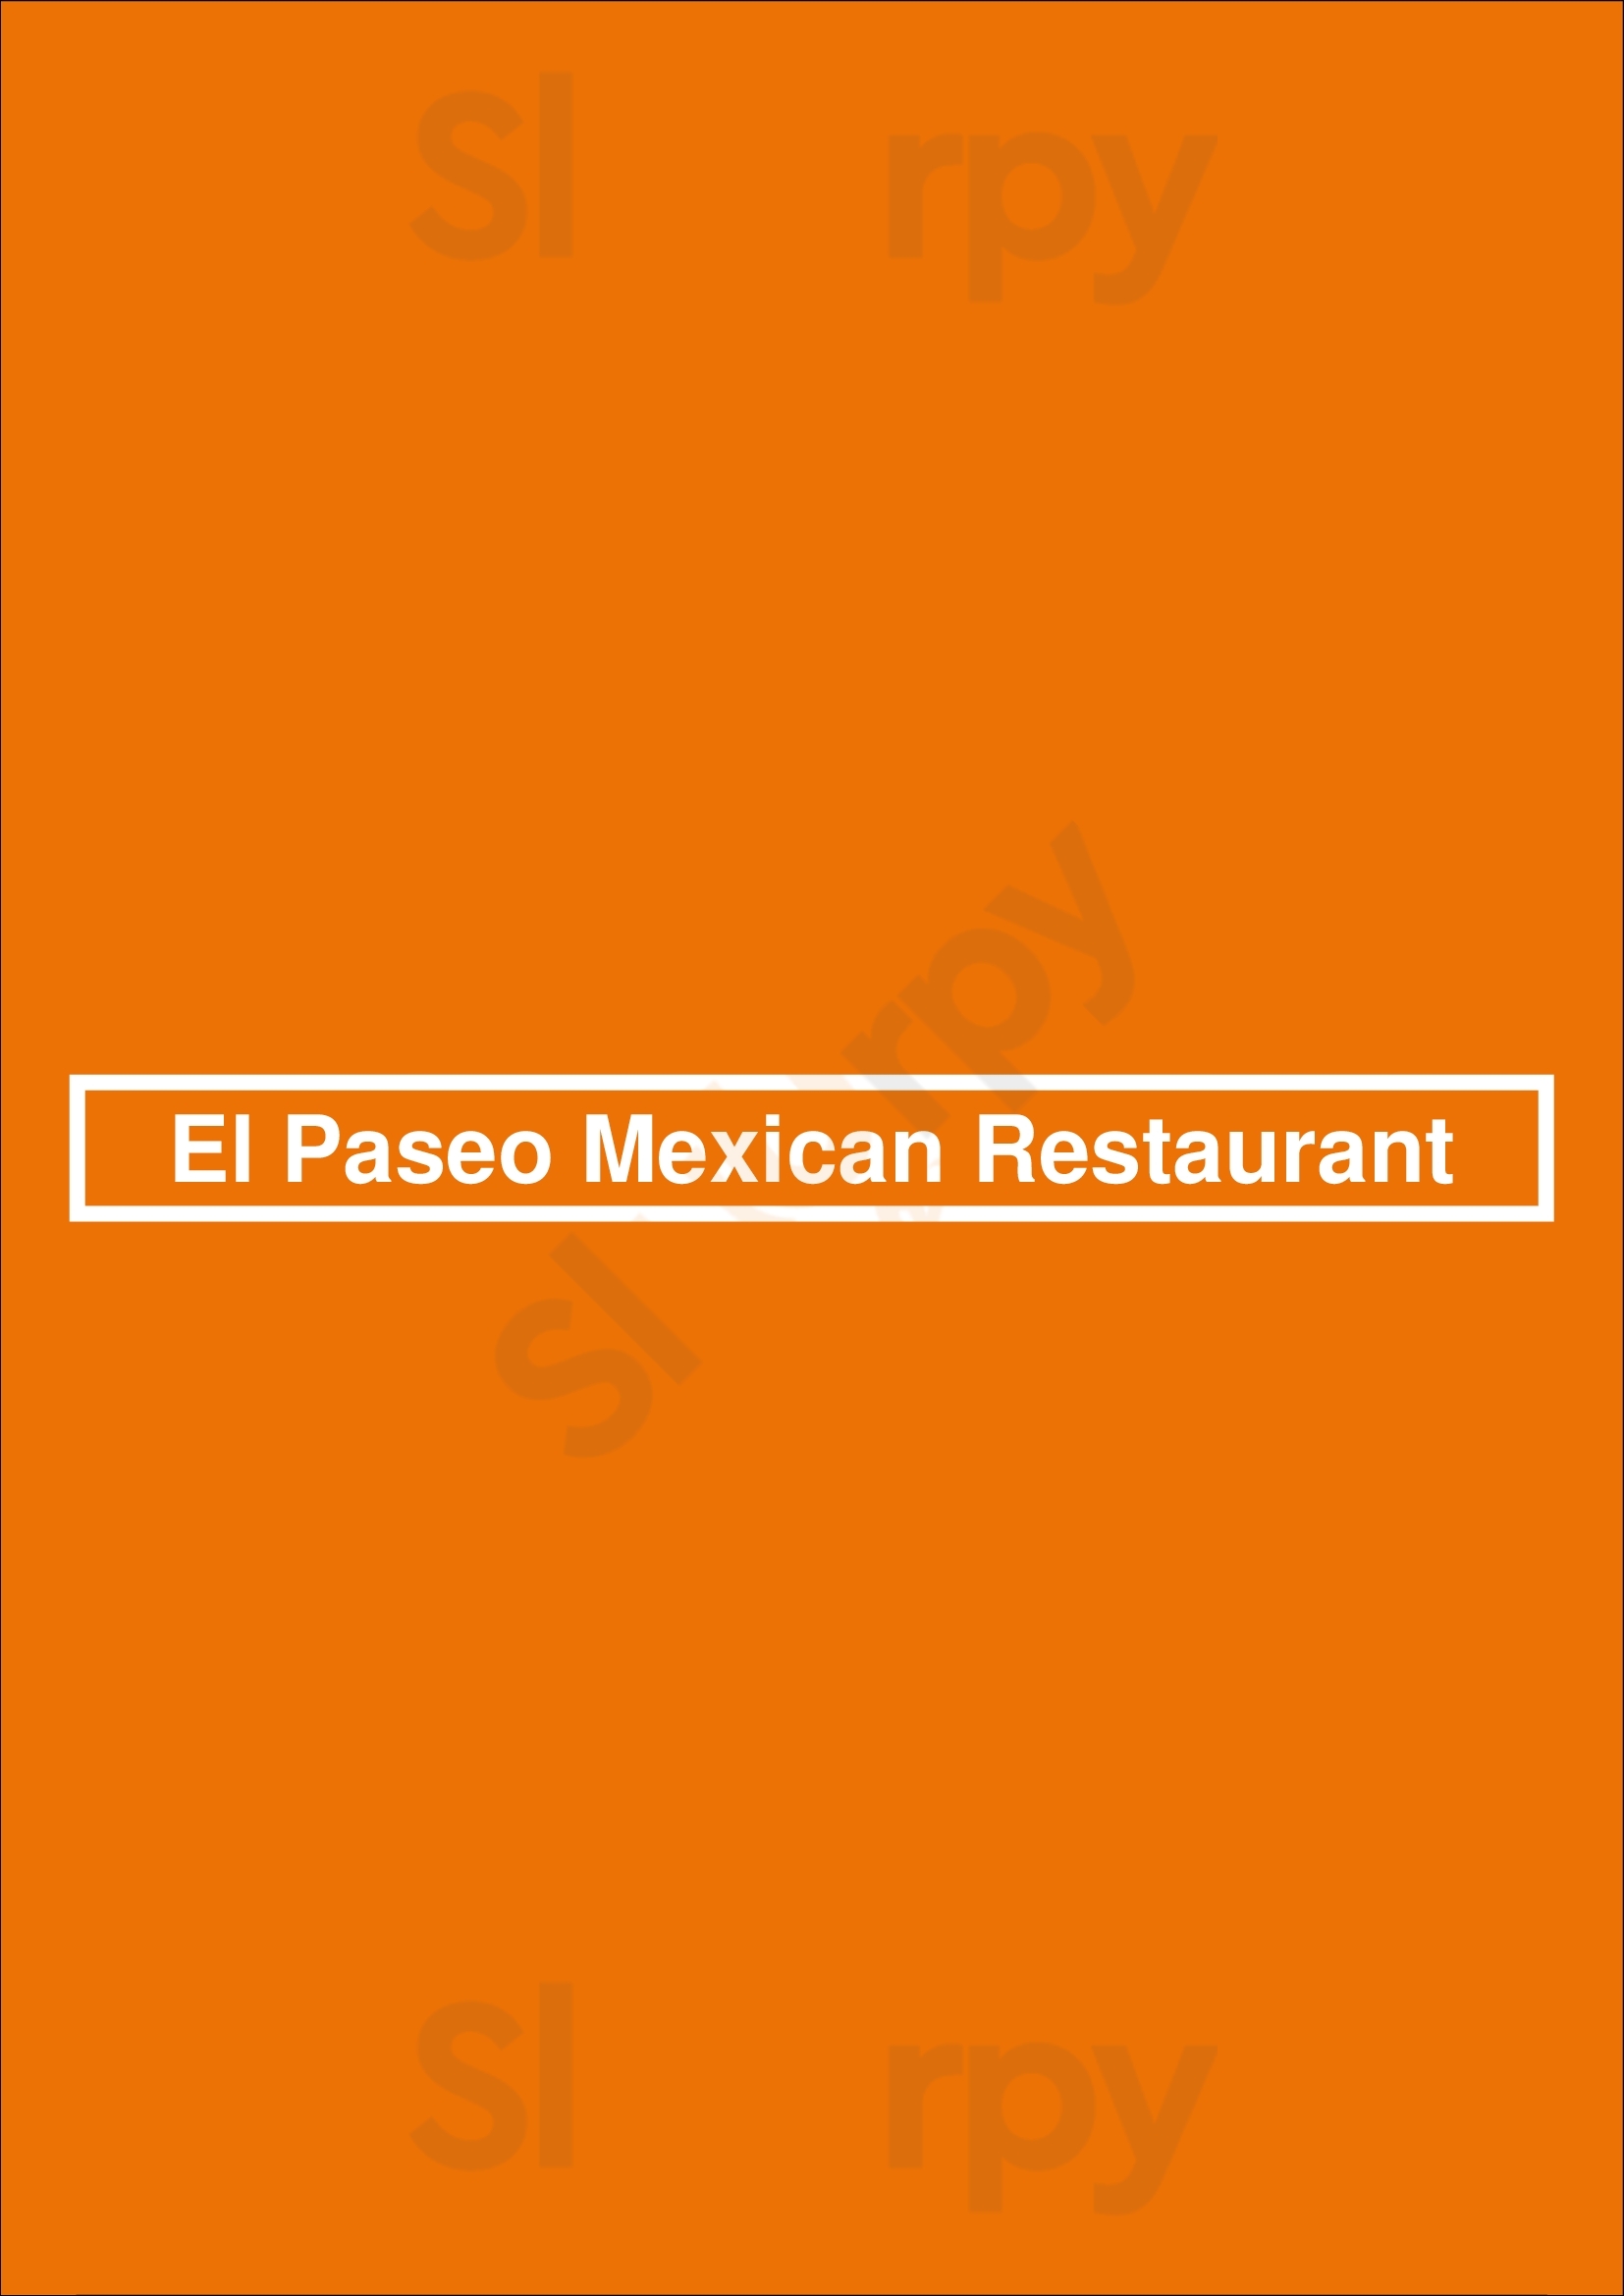 El Paseo Mexican Restaurant Fort Worth Menu - 1